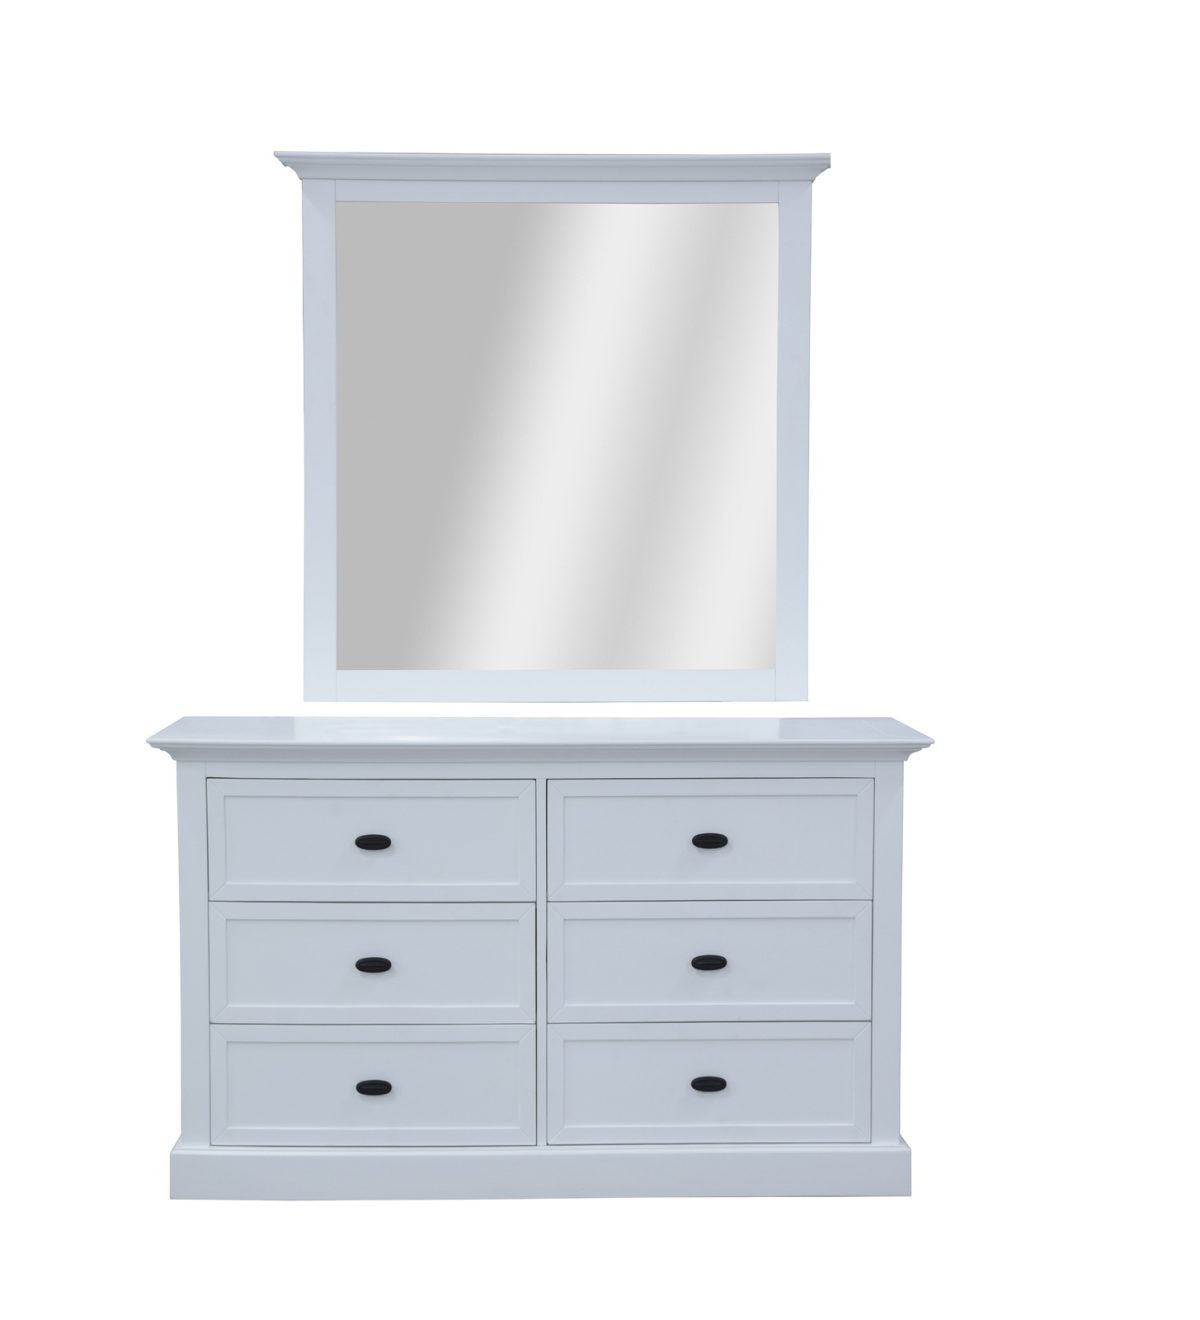 Beechworth Dresser Mirror 6 Chest of Drawers Pine Wood Storage Cabinet – White